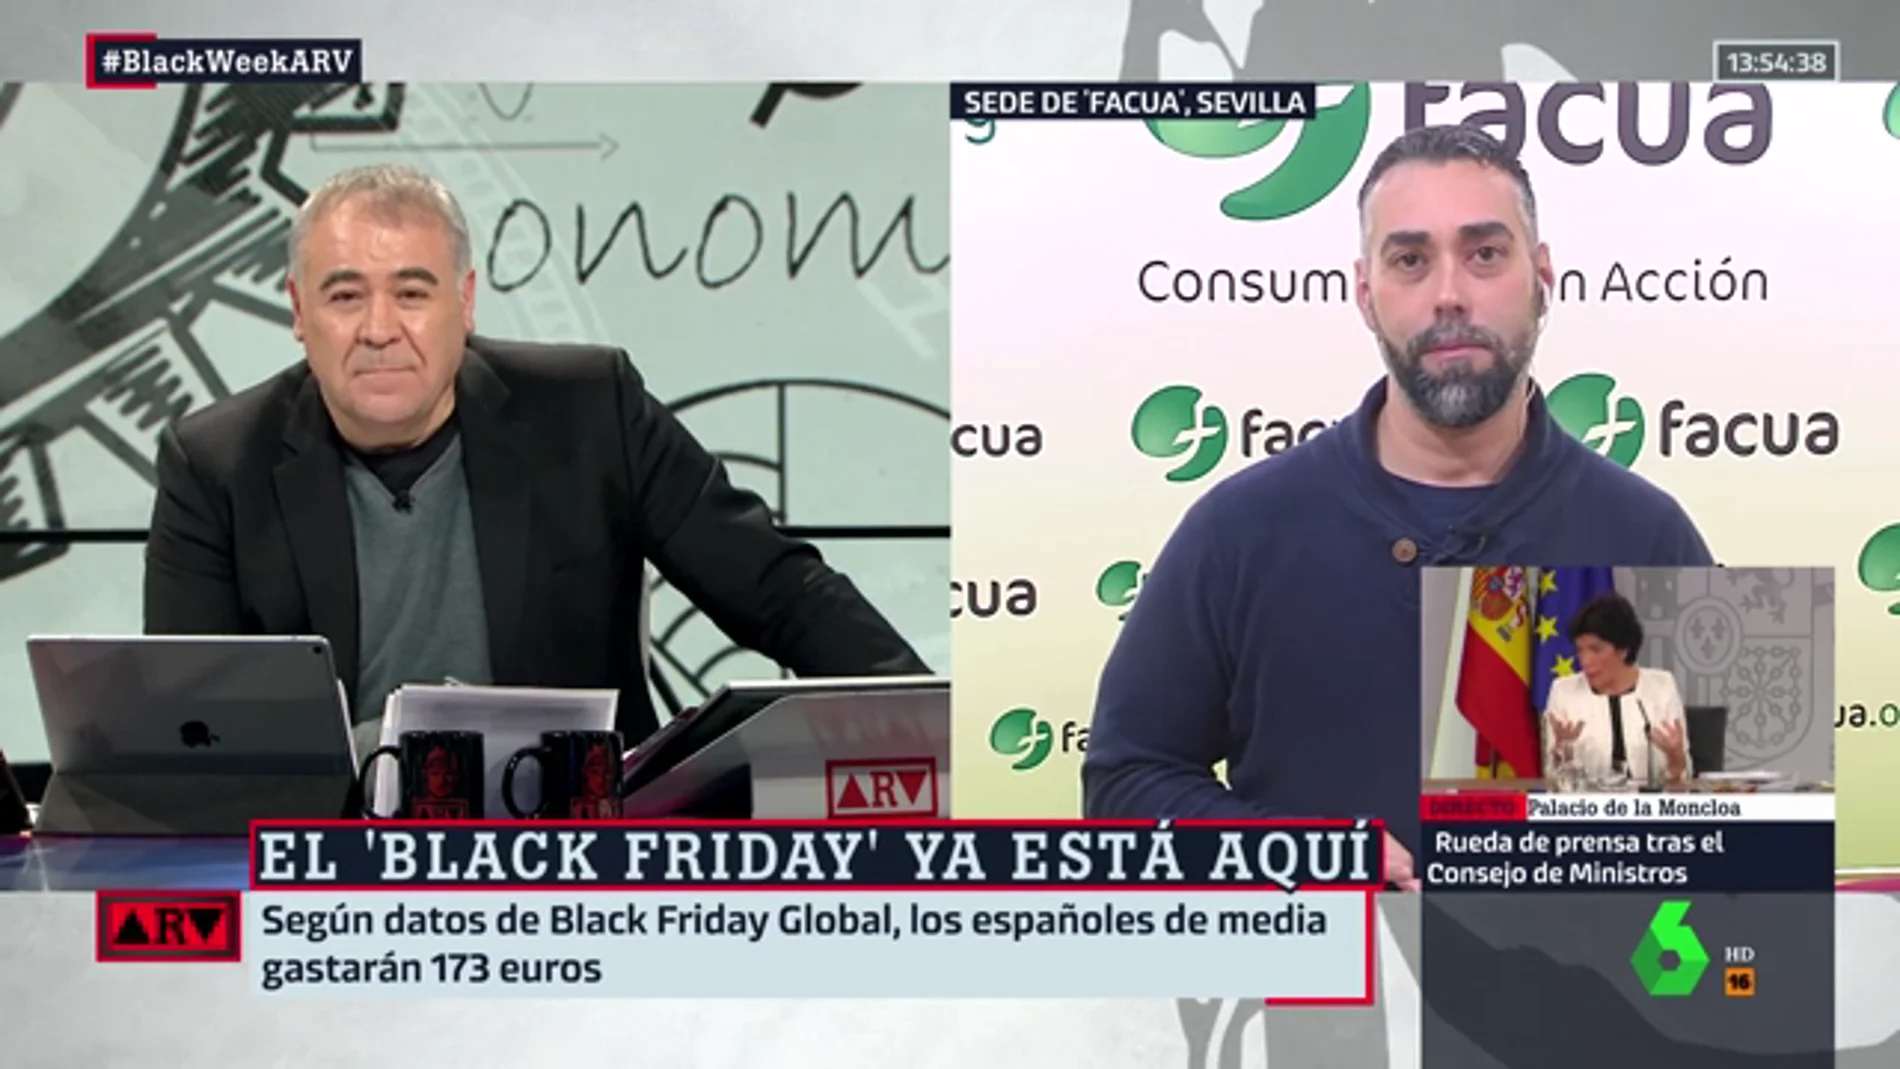 Black Friday 2018: Rubén Sánchez nos advierte de los fraudes en la oleada de compras, ¿cómo evitarlos?